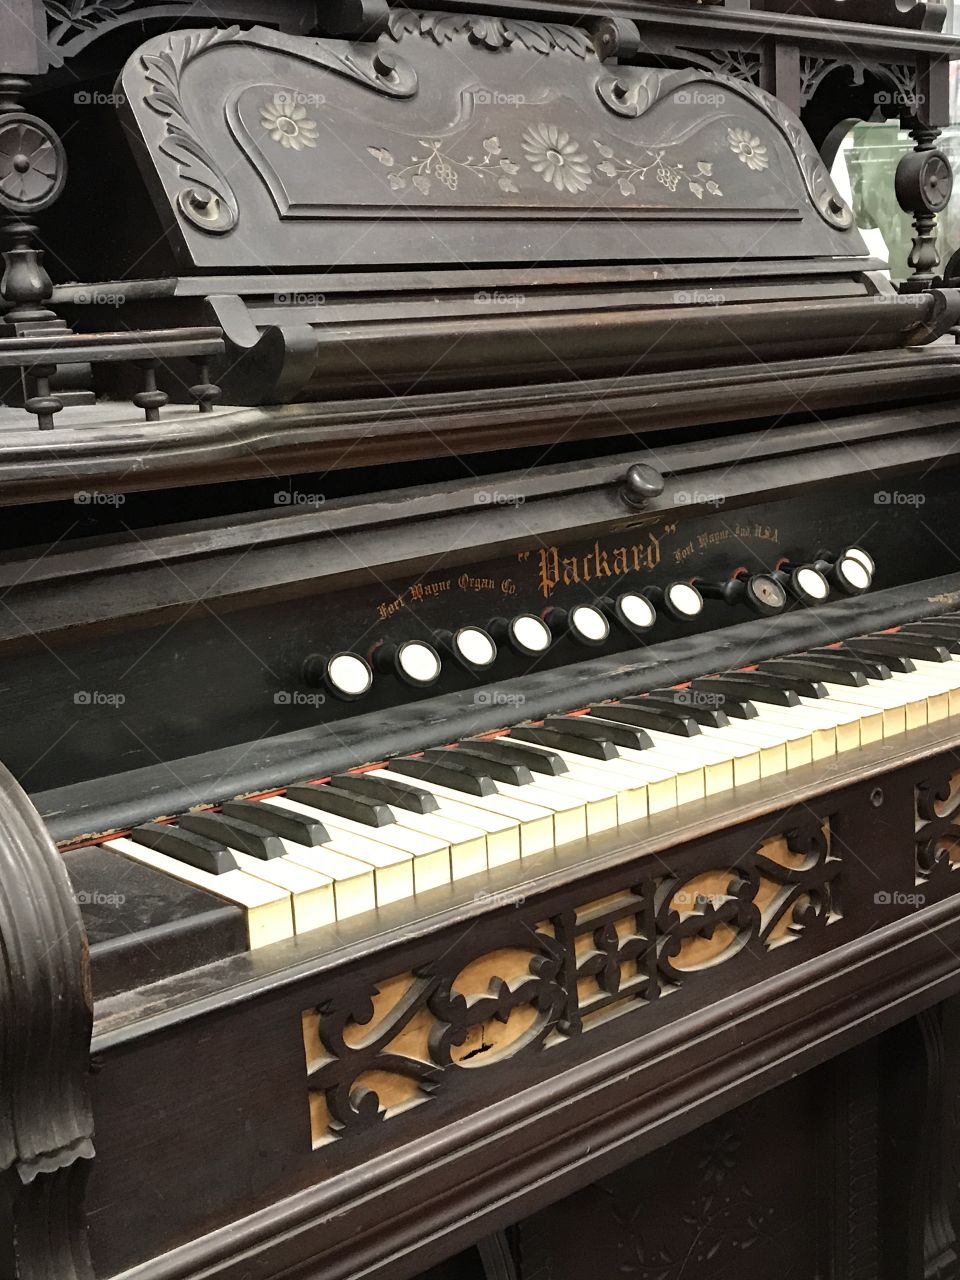 Antique organ